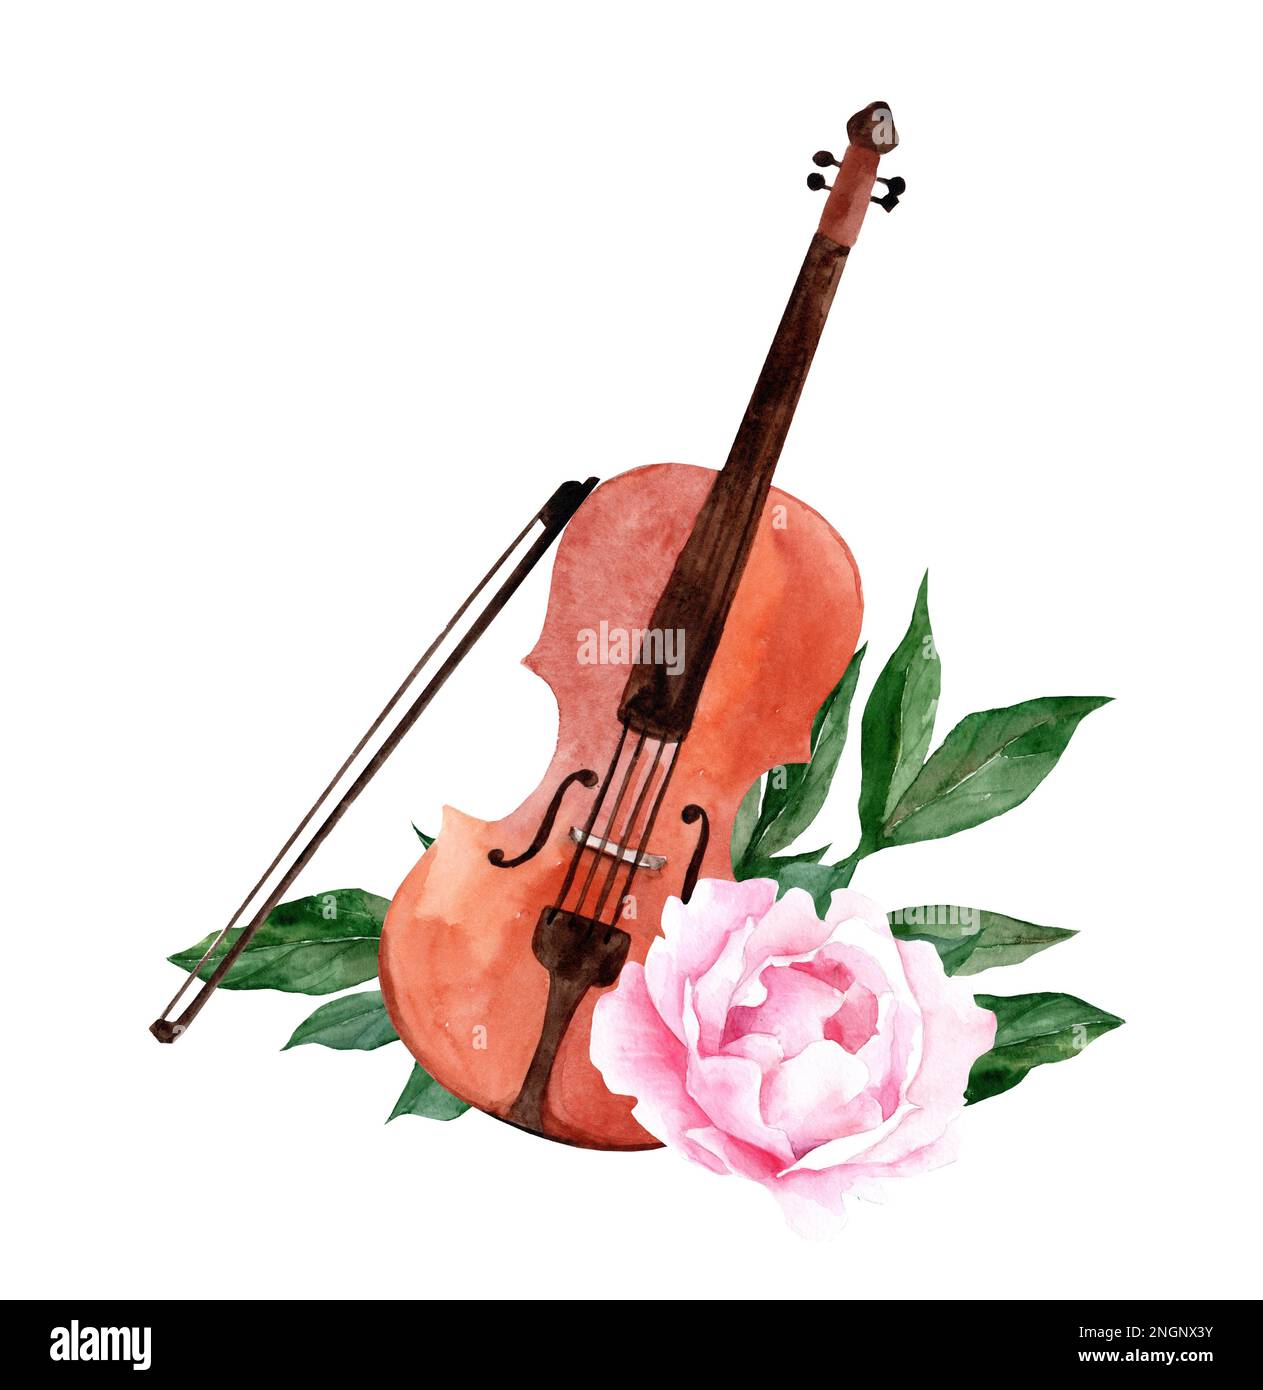 illustration de violon aquarelle avec fleurs de pivoine rose. instruments de musique classique Banque D'Images